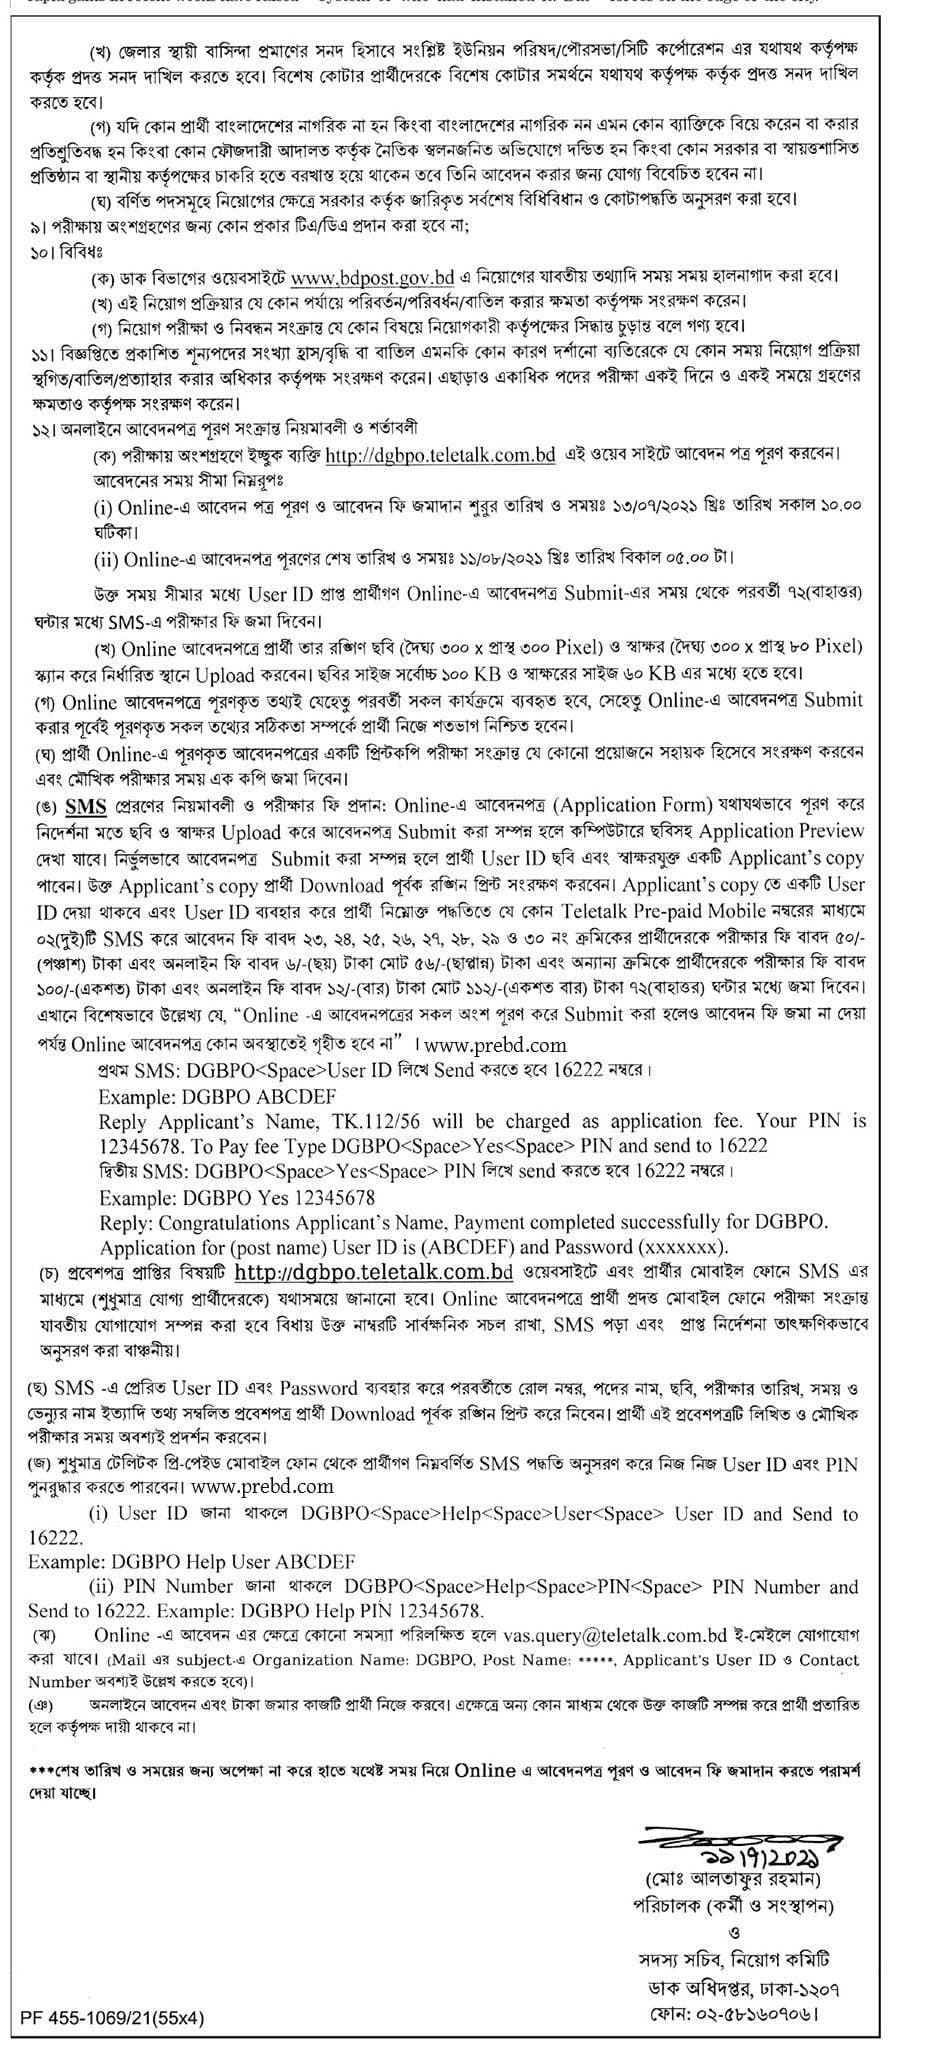 বাংলাদেশ ডাক বিভাগ নিয়োগ বিজ্ঞপ্তি ২০২১ - বাংলাদেশ পোস্ট অফিস নিয়োগ বিজ্ঞপ্তি ২০২১ - Bangladesh Post Office Recruitment Circular 2021